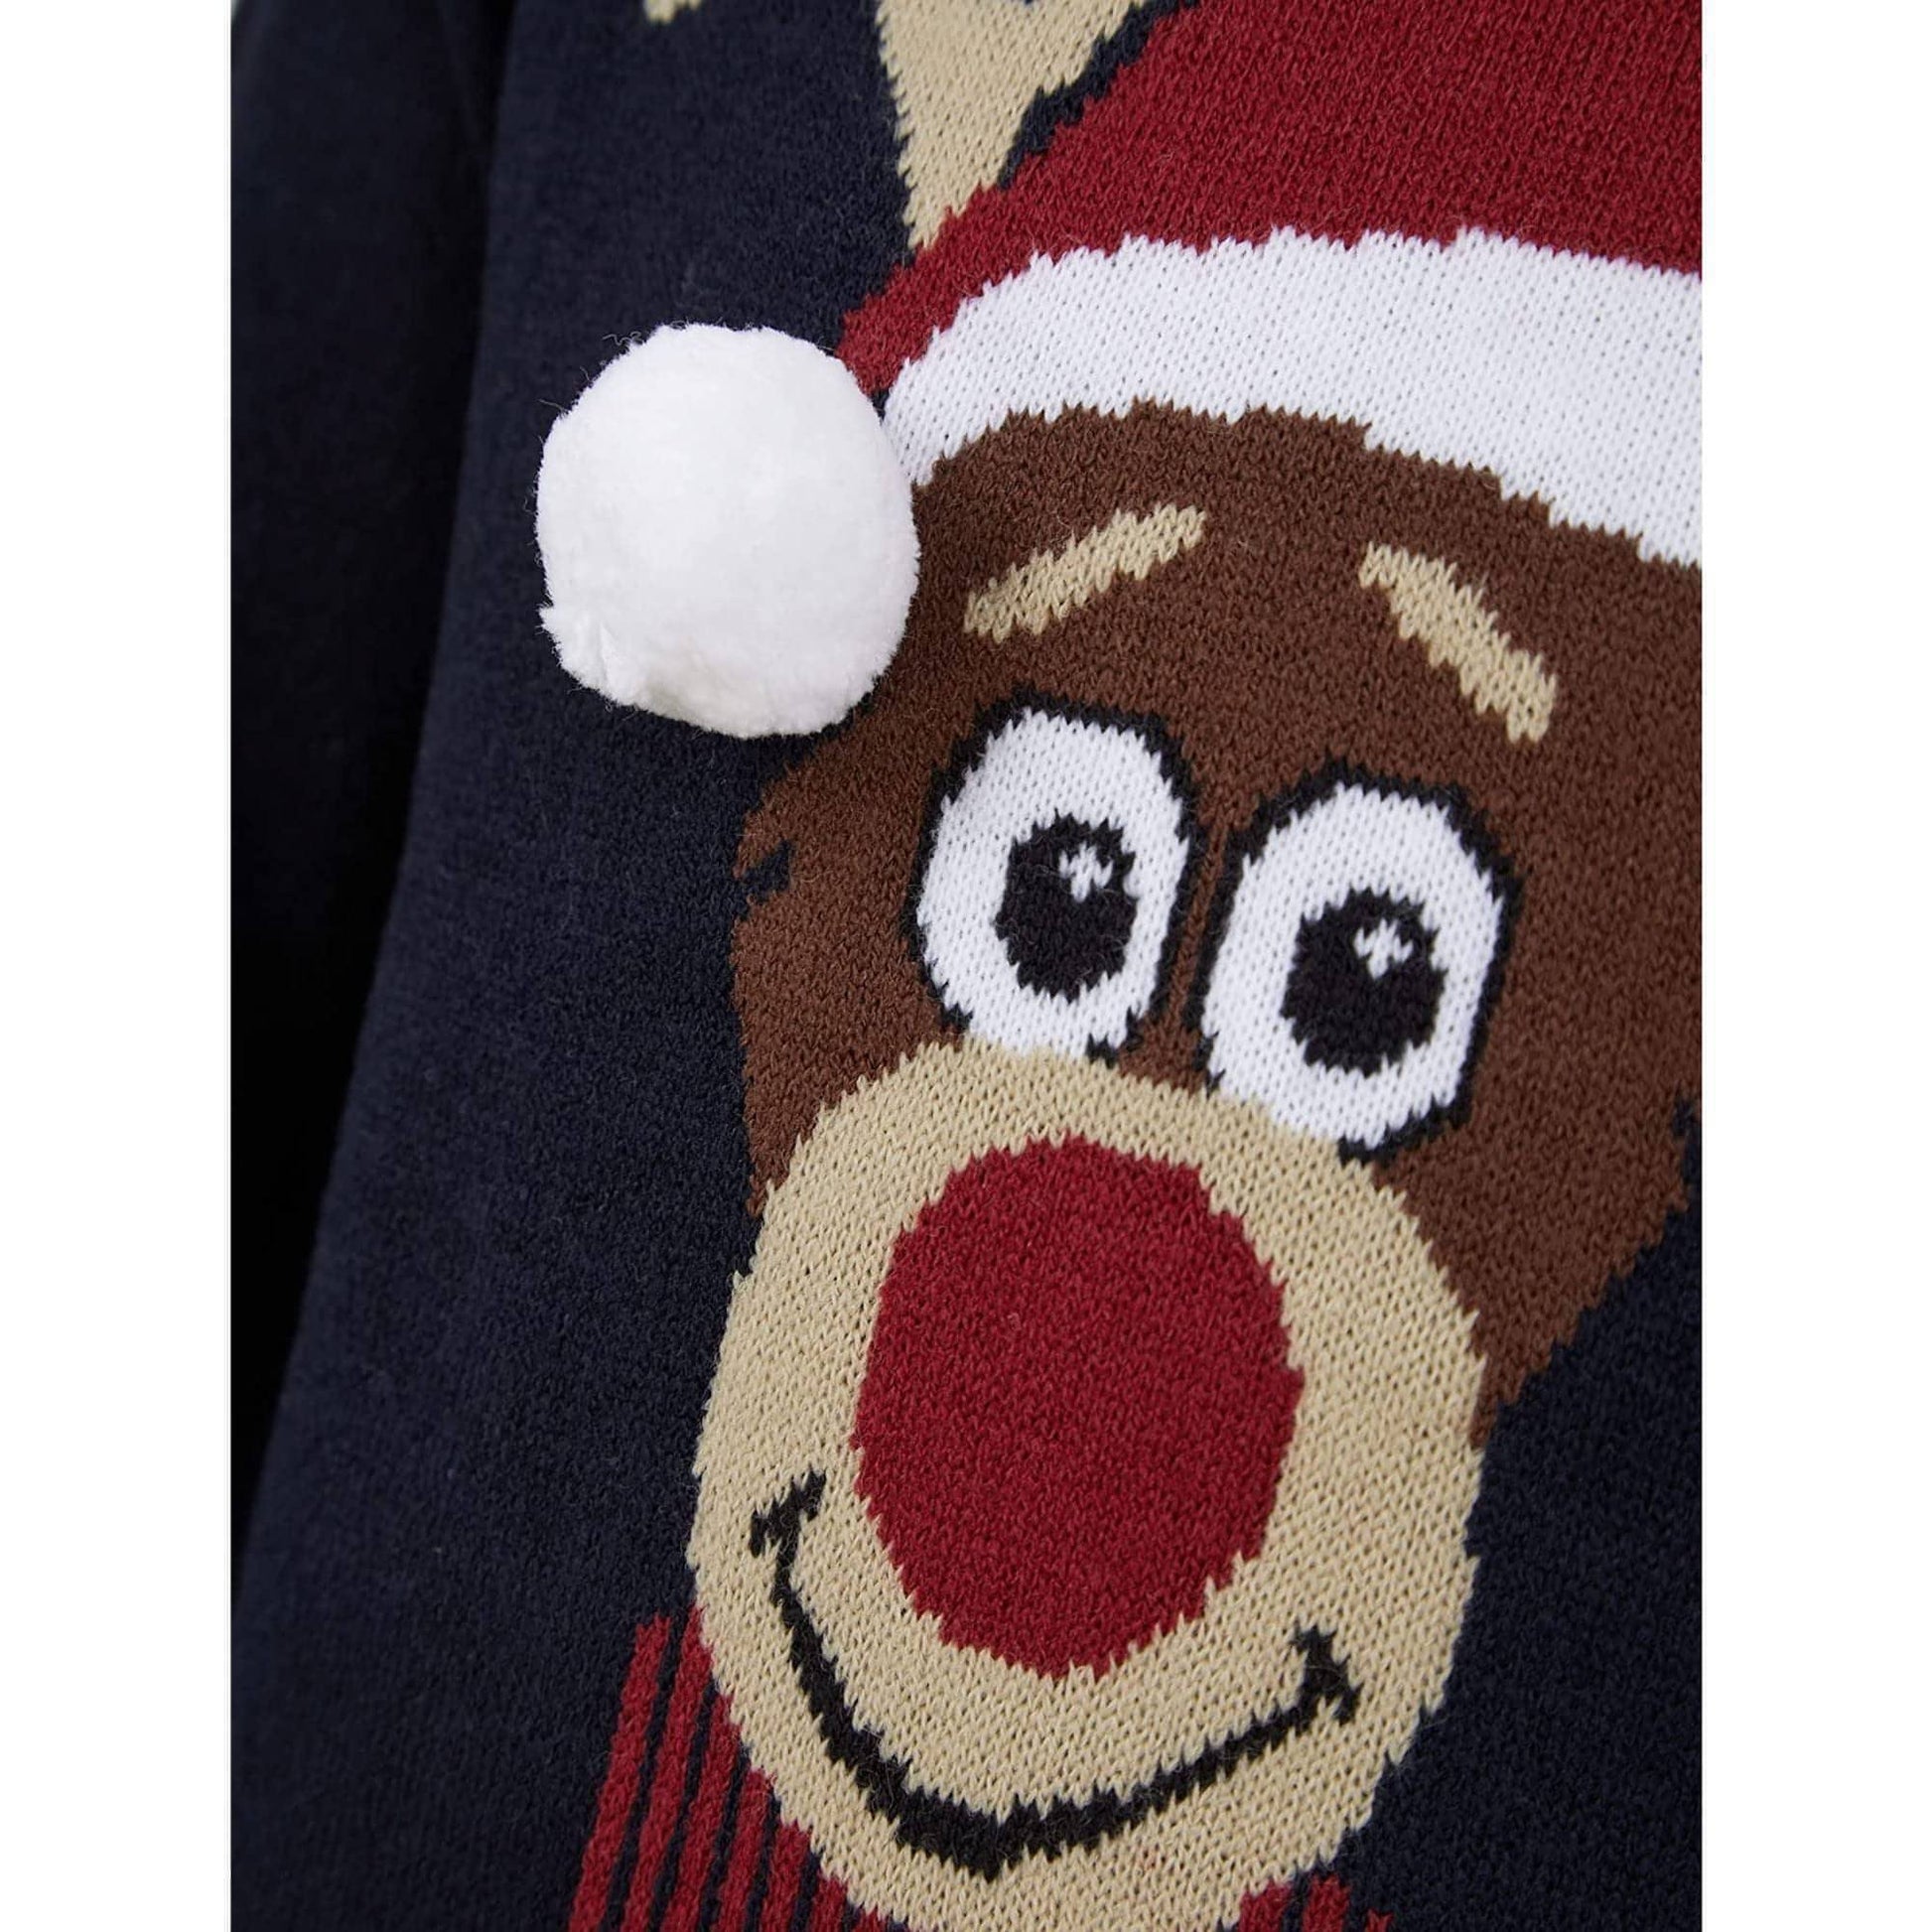 Christmas Reindeer  Pom Pom Jumper  Details